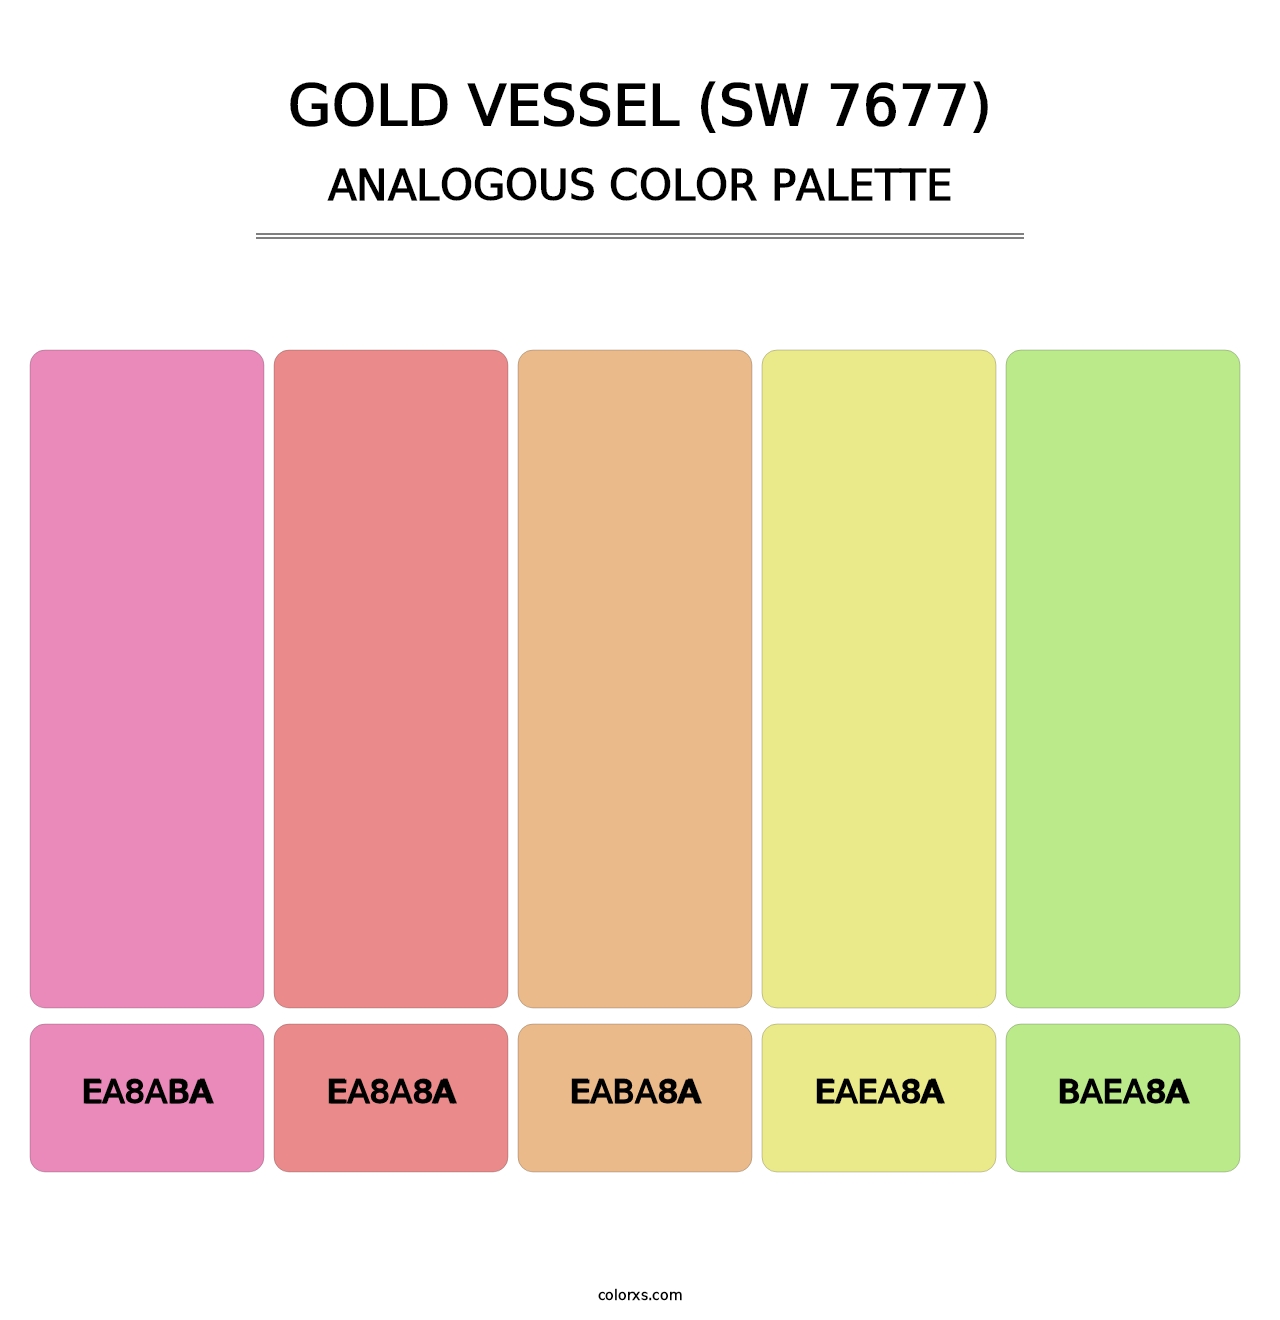 Gold Vessel (SW 7677) - Analogous Color Palette